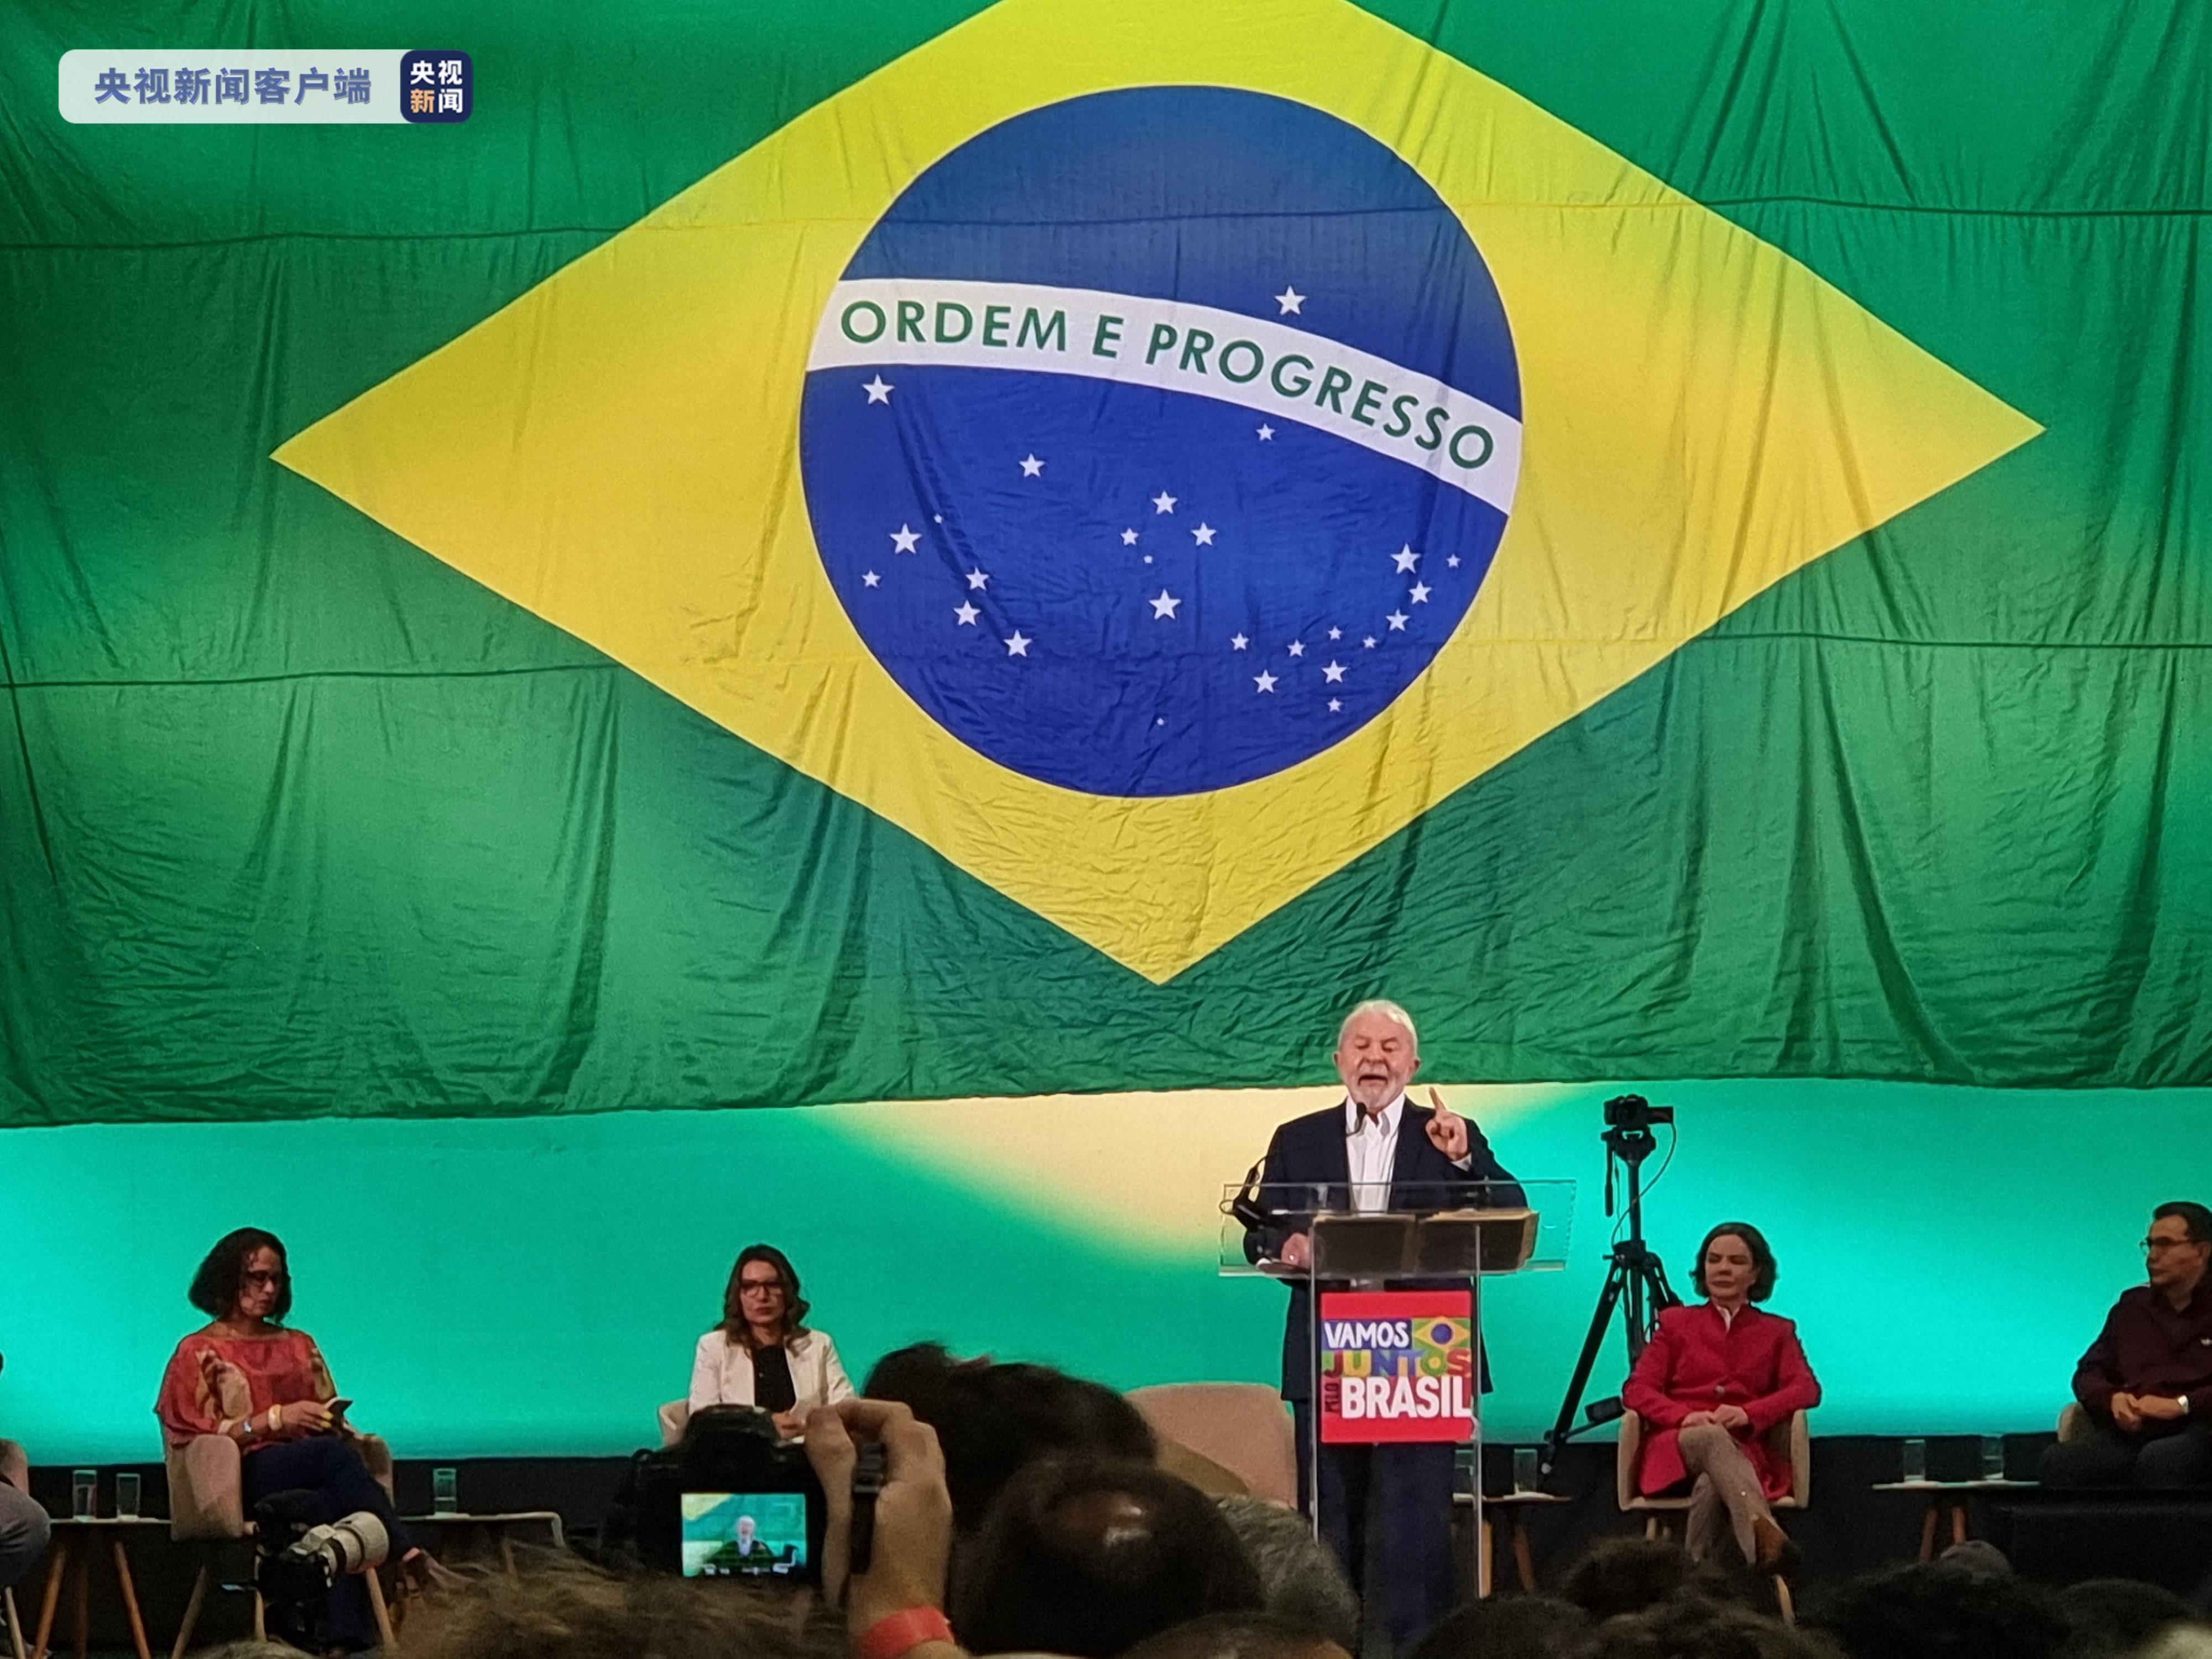 卢拉在活动上对其支持者表示感谢,并表达了他志在重建巴西社会秩序,为